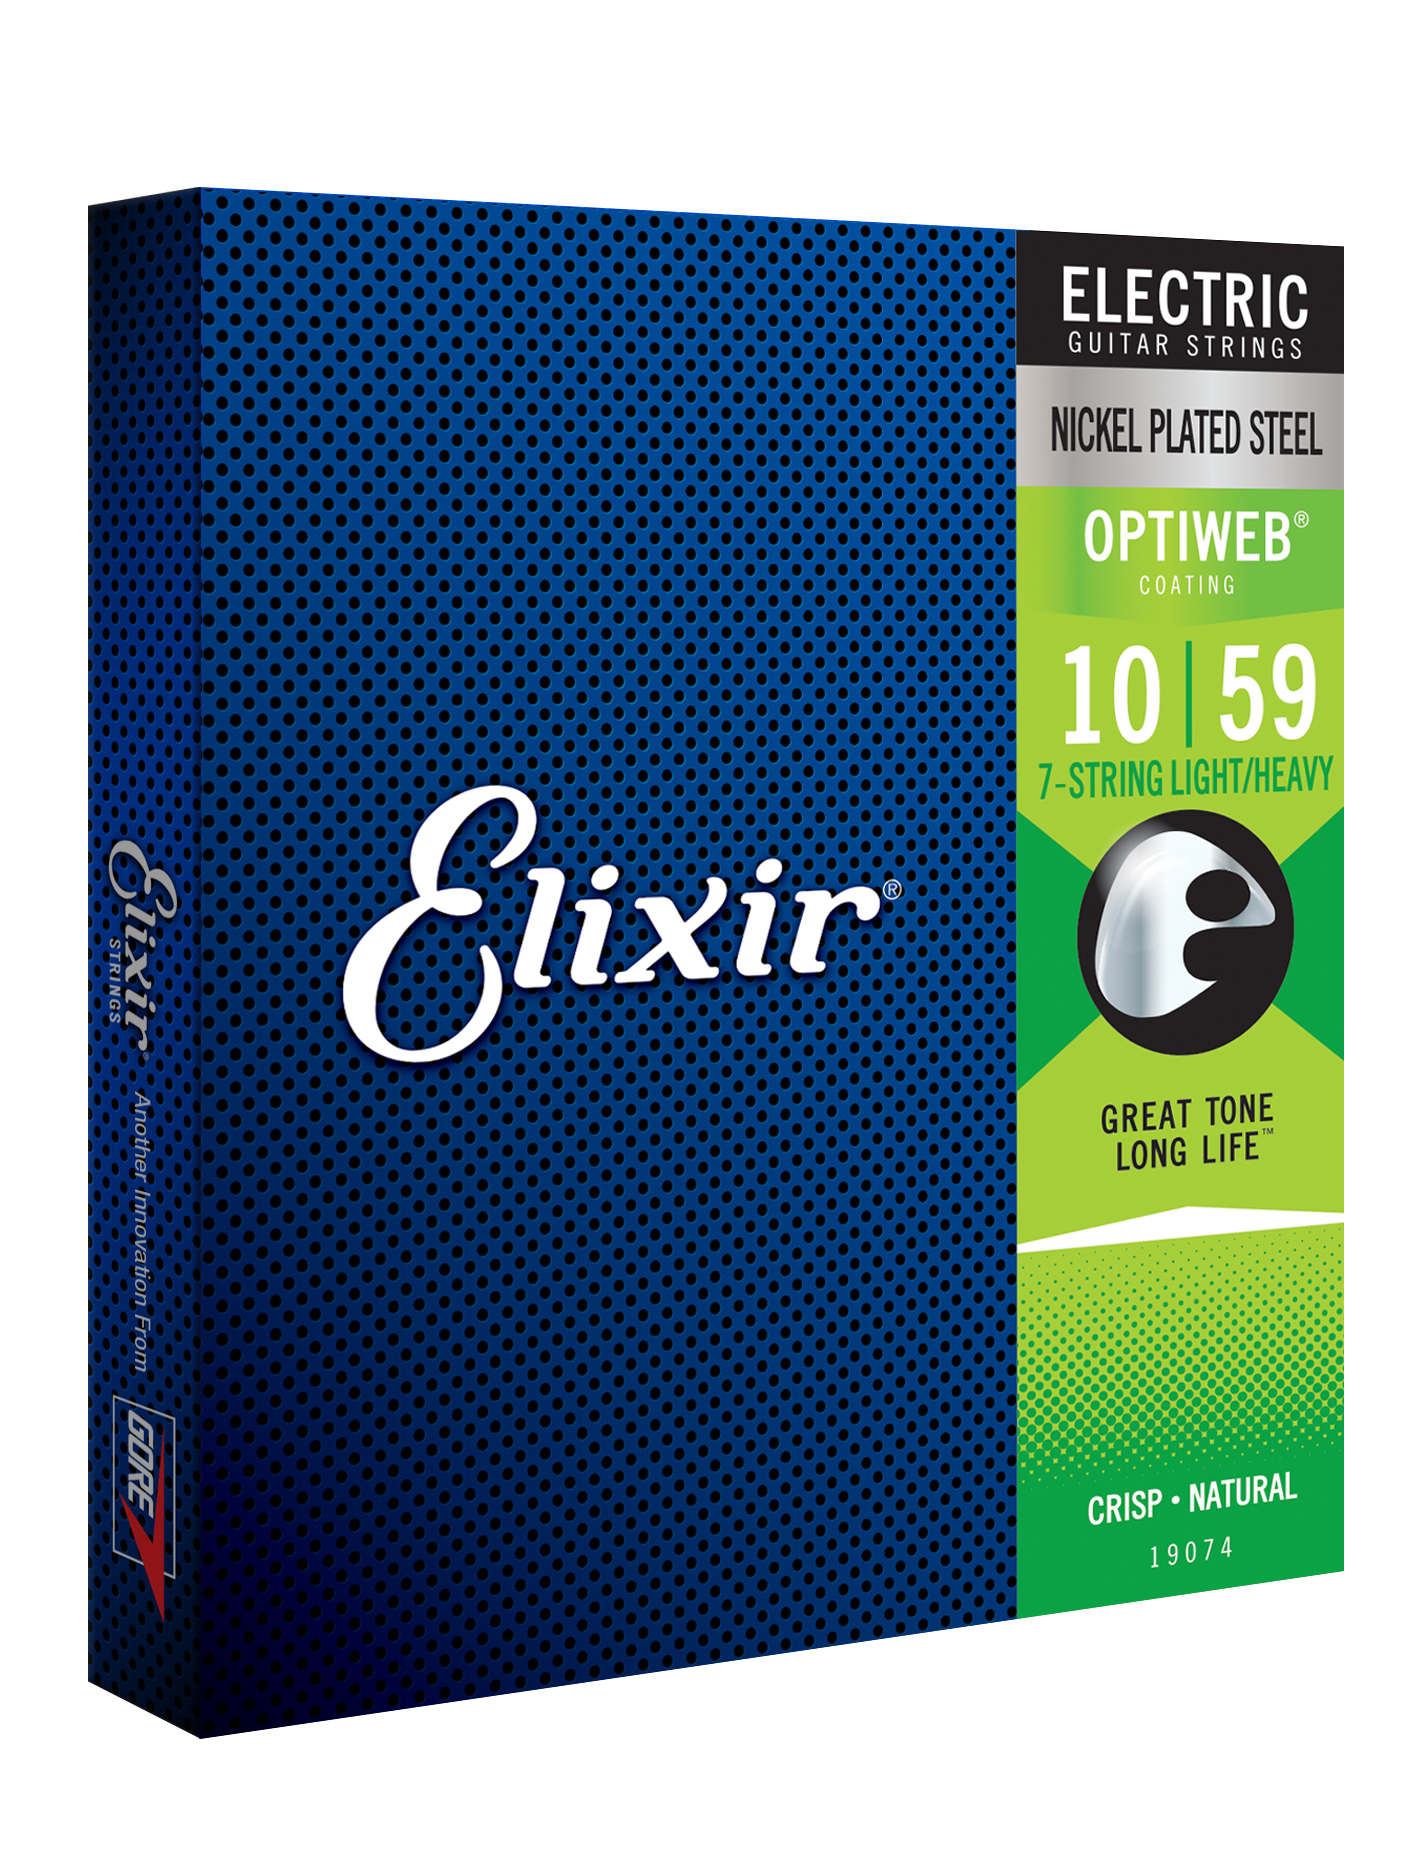 Elixir 19074 7-string Optiweb Nps Electric Guitar 7c Light/heavy 10-59 - Elektrische gitaarsnaren - Variation 1